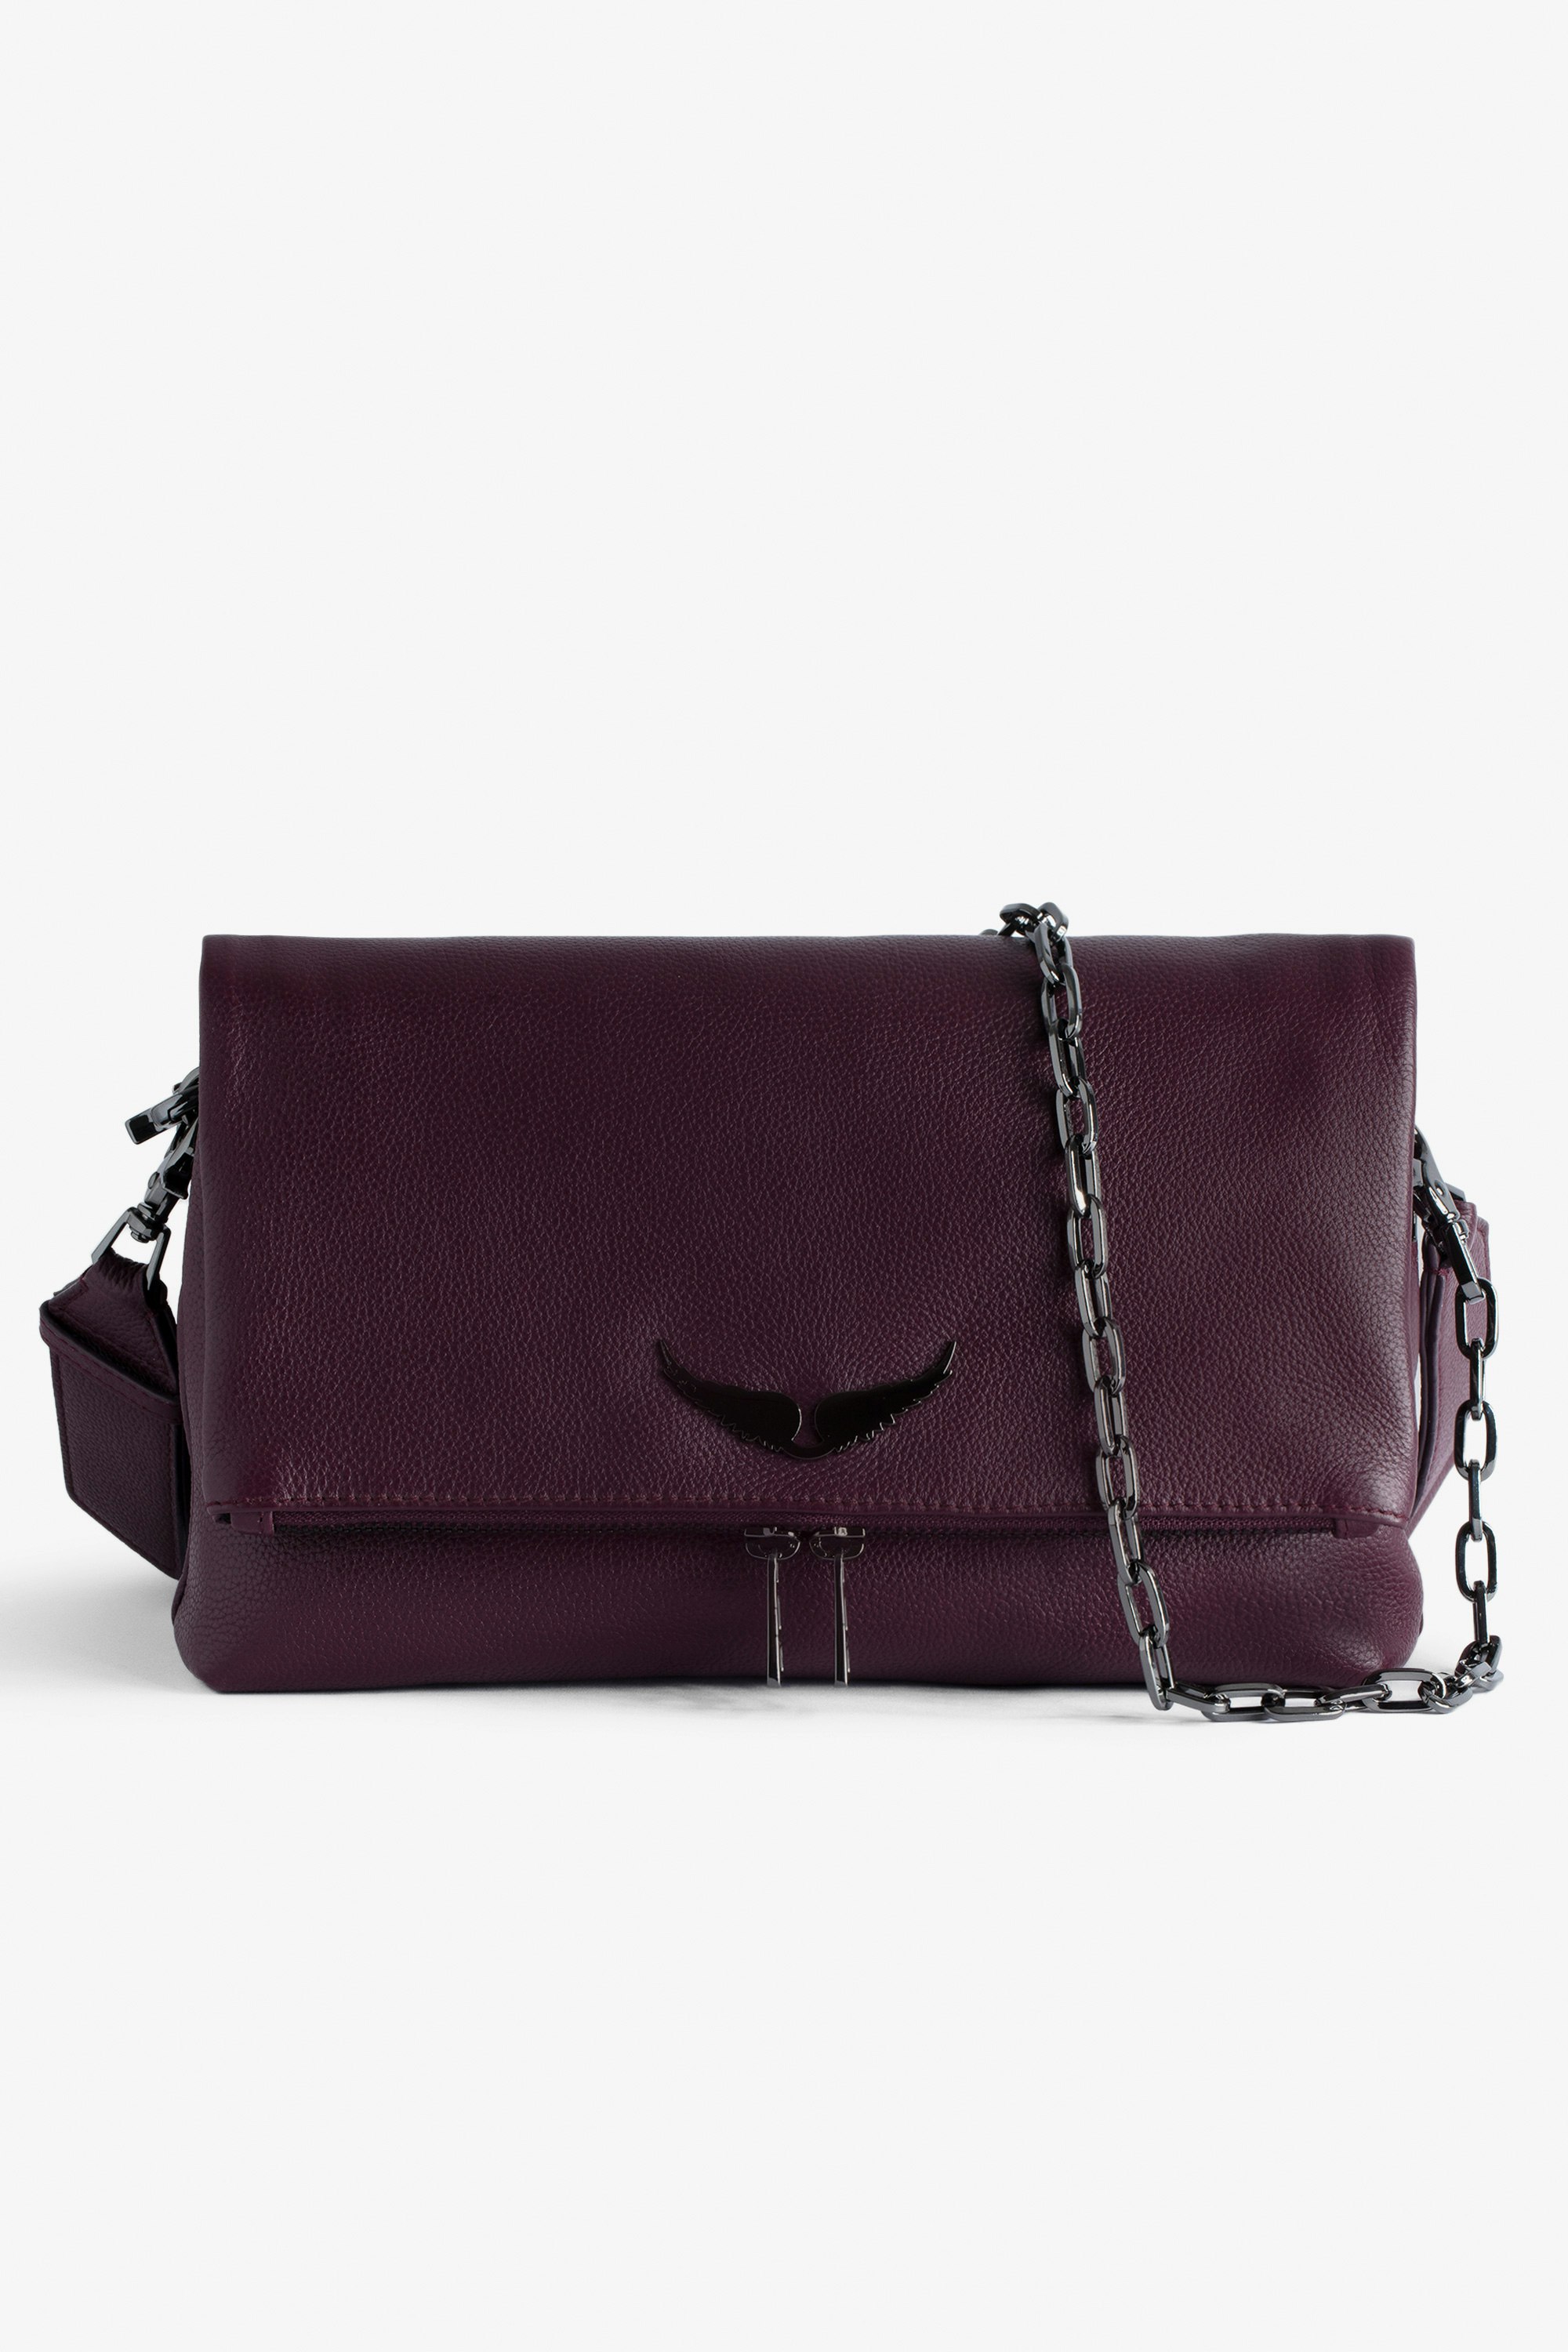 Tasche Rocky - Tasche aus genarbtem Leder in Bordeauxrot mit Schulterriemen und Flügel-Charm für Damen